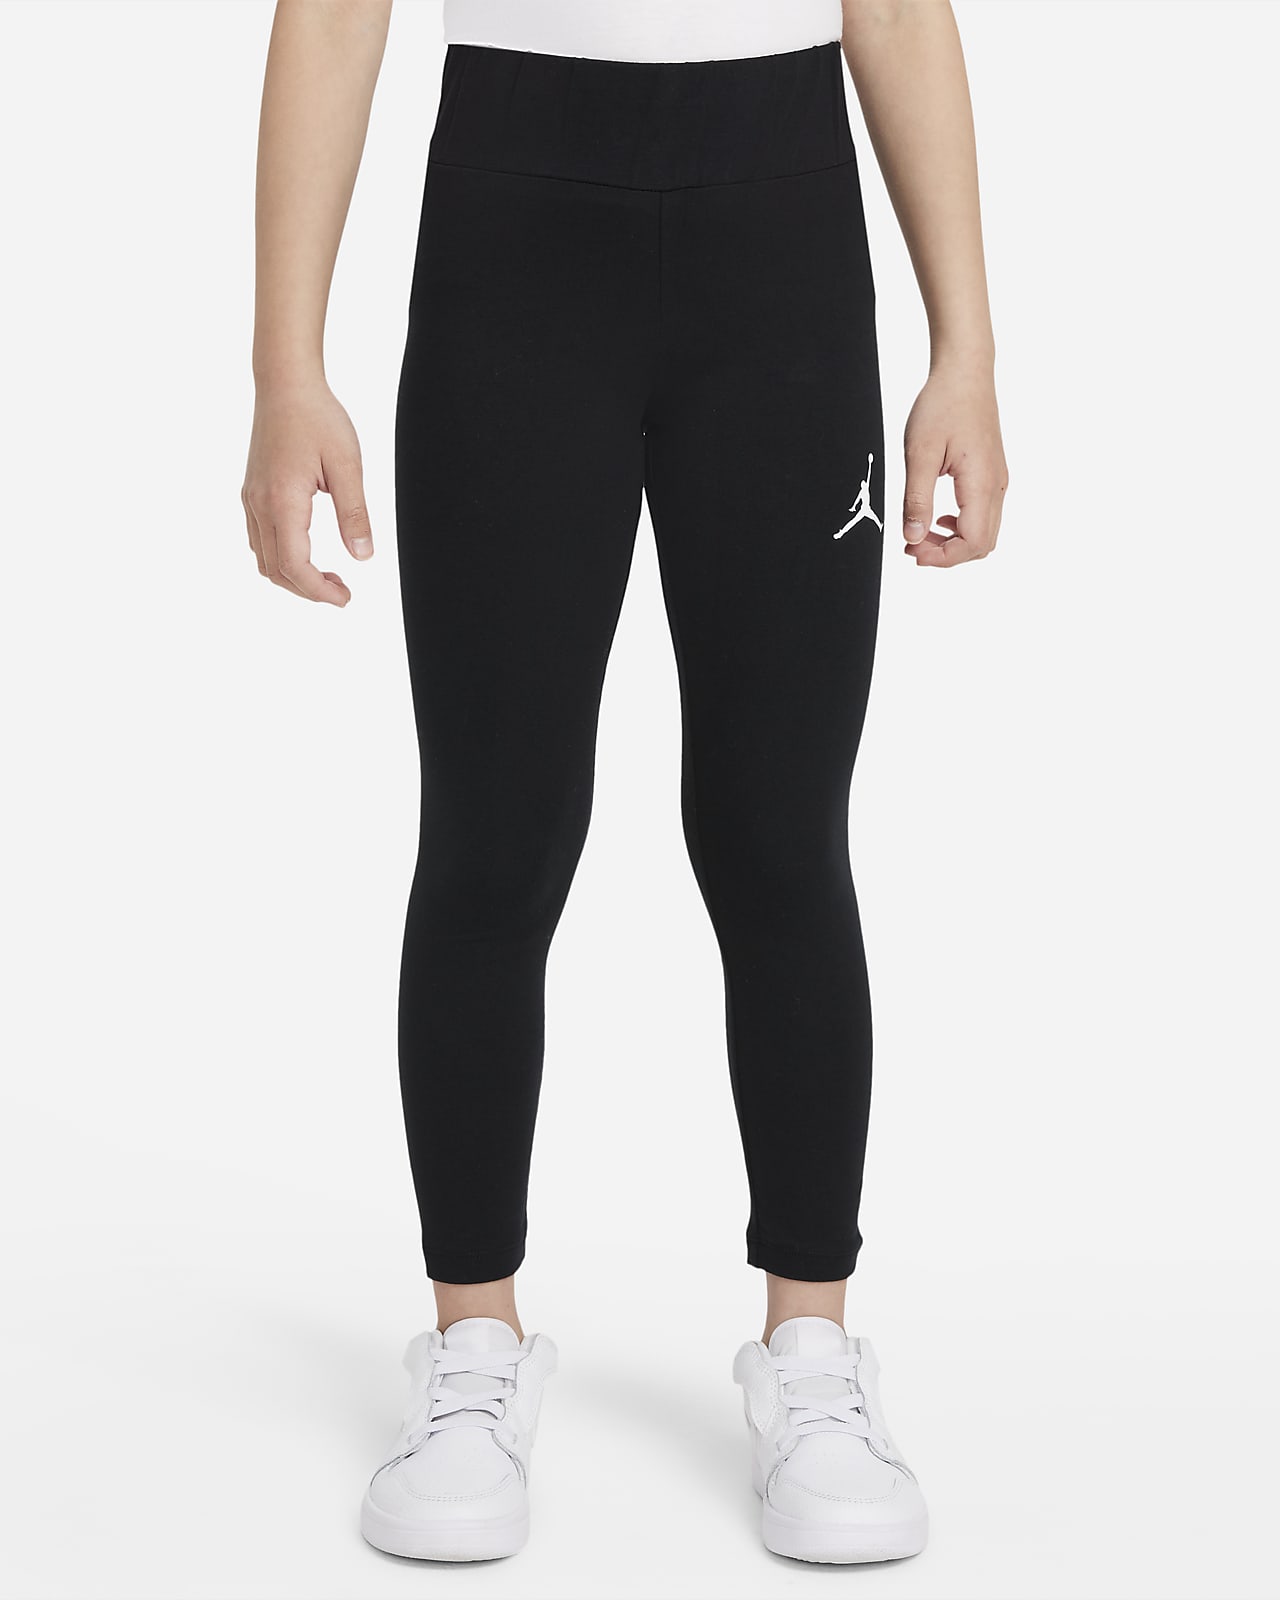 Brand new juniors XL Nike Jordan leggings in black. - Depop